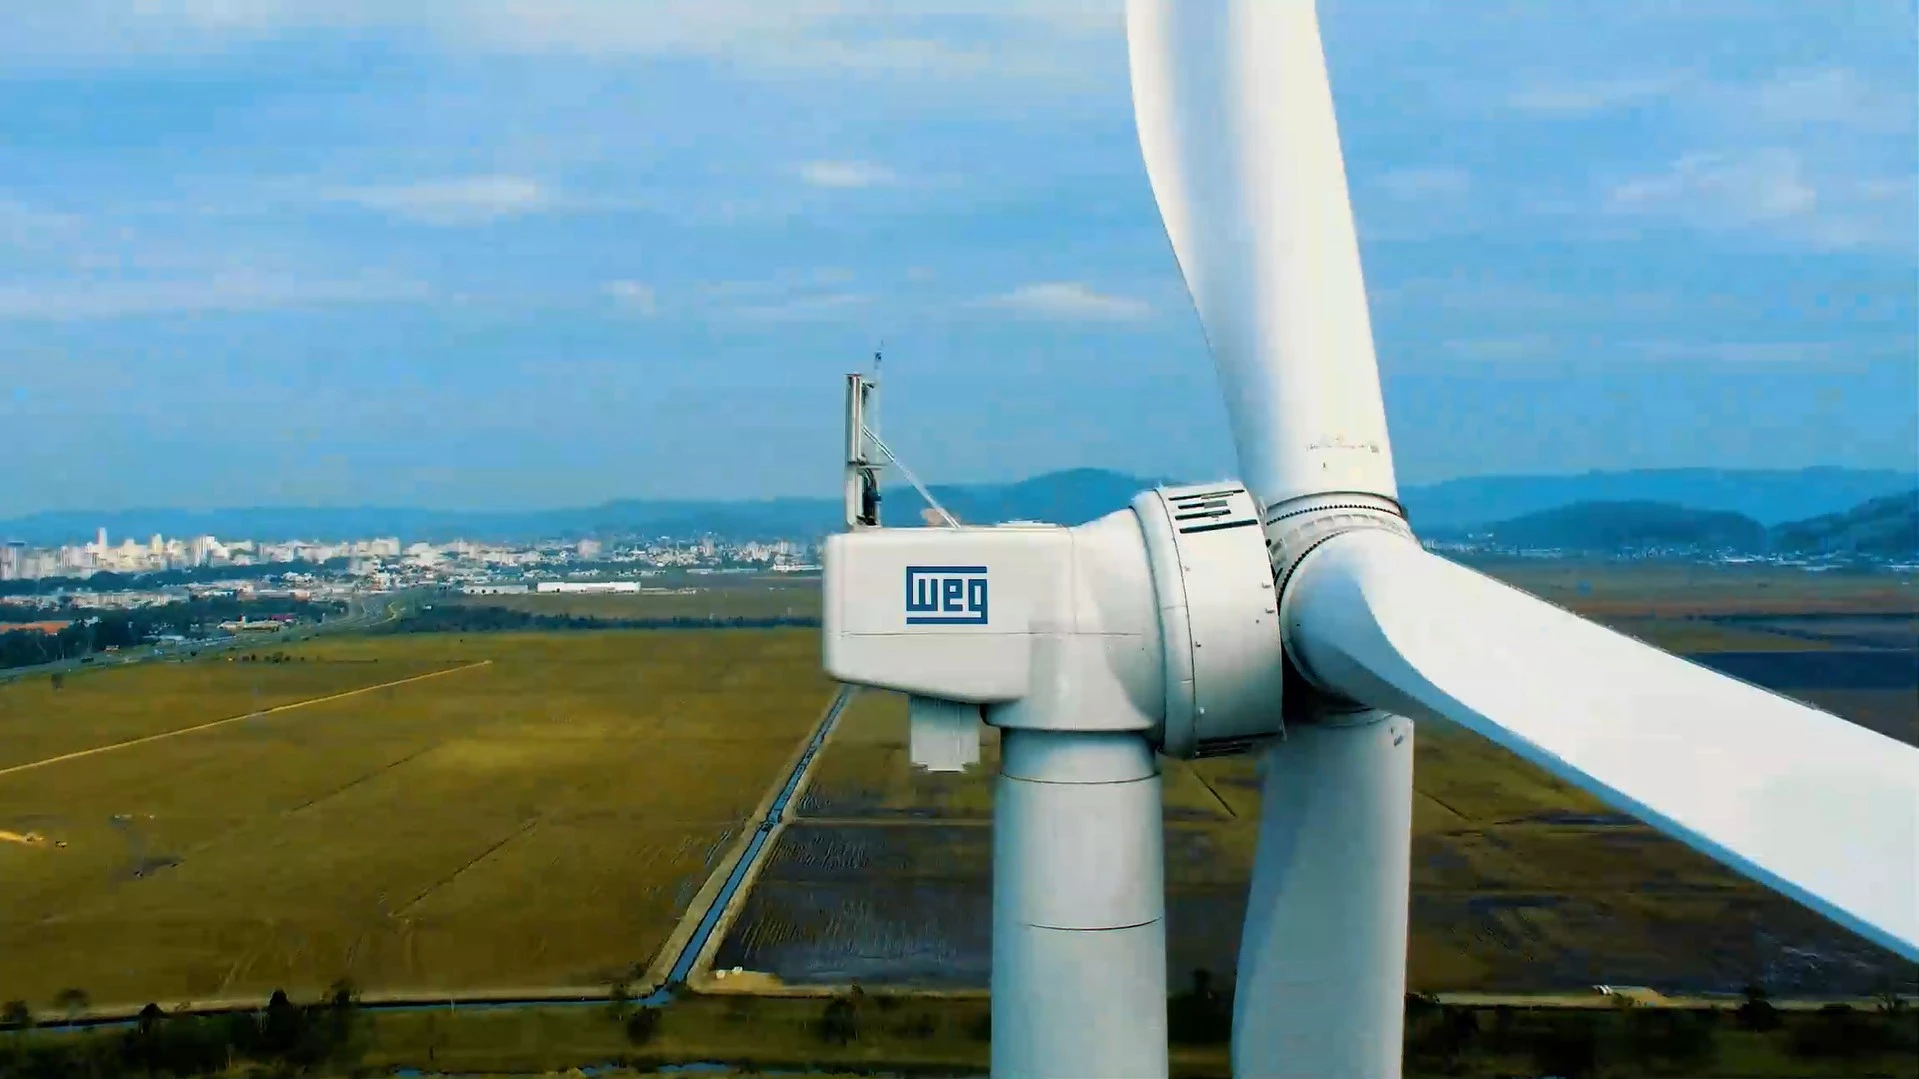 WEG compra 45% da Bewind, empresa alemã de produção de aerogeradores e seus componentes. Na imagem: Parte de cima de aerogerador gigantesco da WEG com logomarca da empresa na lateral do compartimento da turbina (Foto: Divulgação)